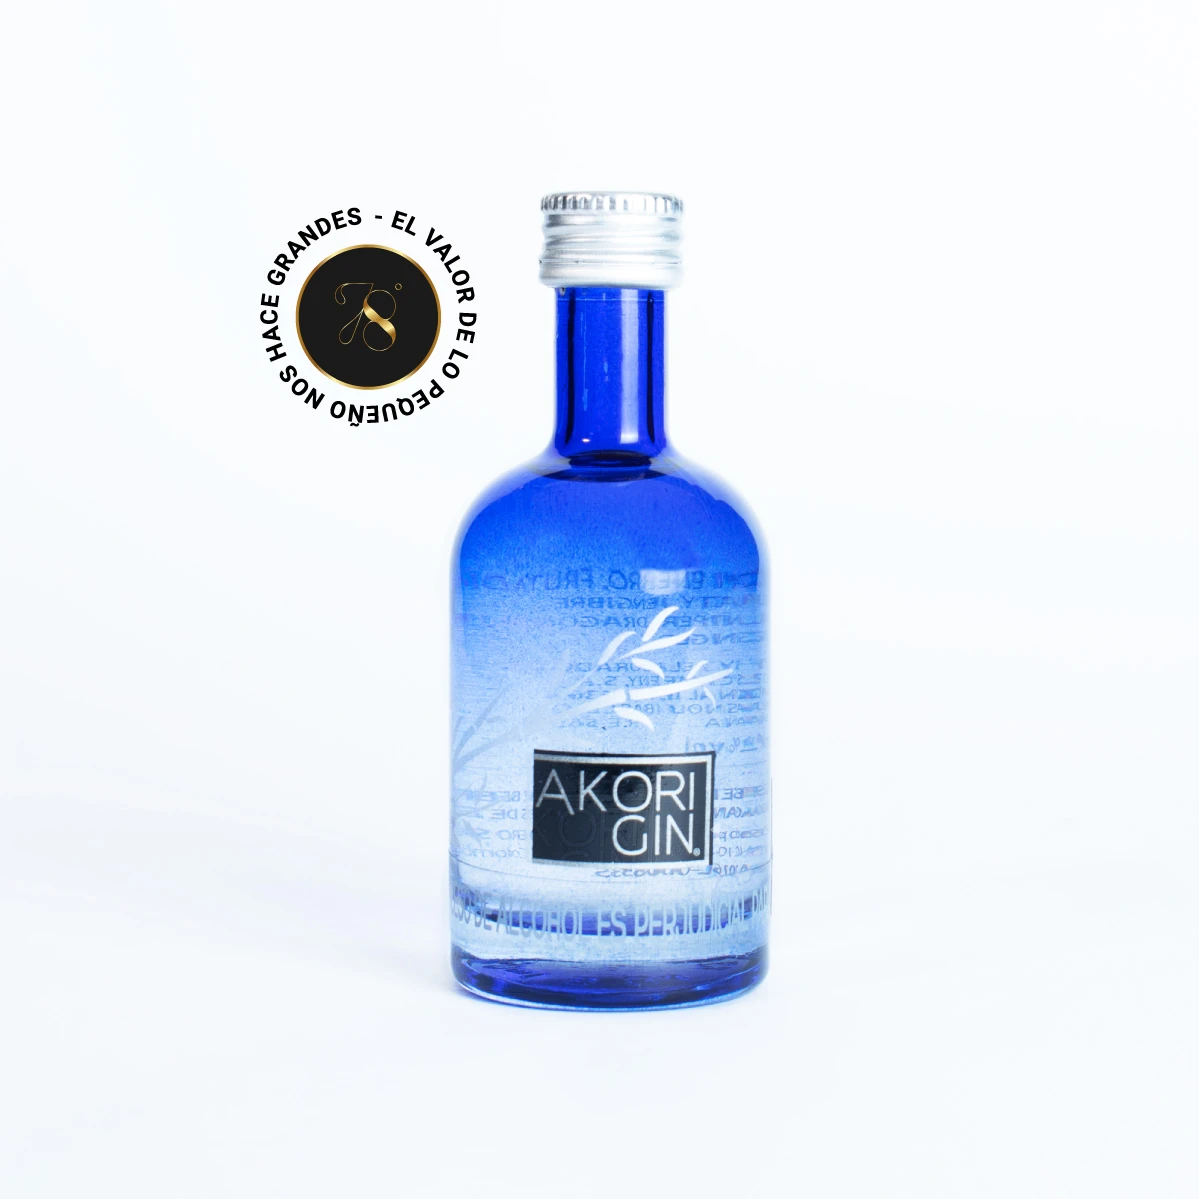 MB024 - Mini Botella - Botellita de licor de de Ginebra Akori Gin más caja de regalo premium e invitación o fotografía personalizada. Ideal para eventos, recuerdos, bodas o regalos corporativos.